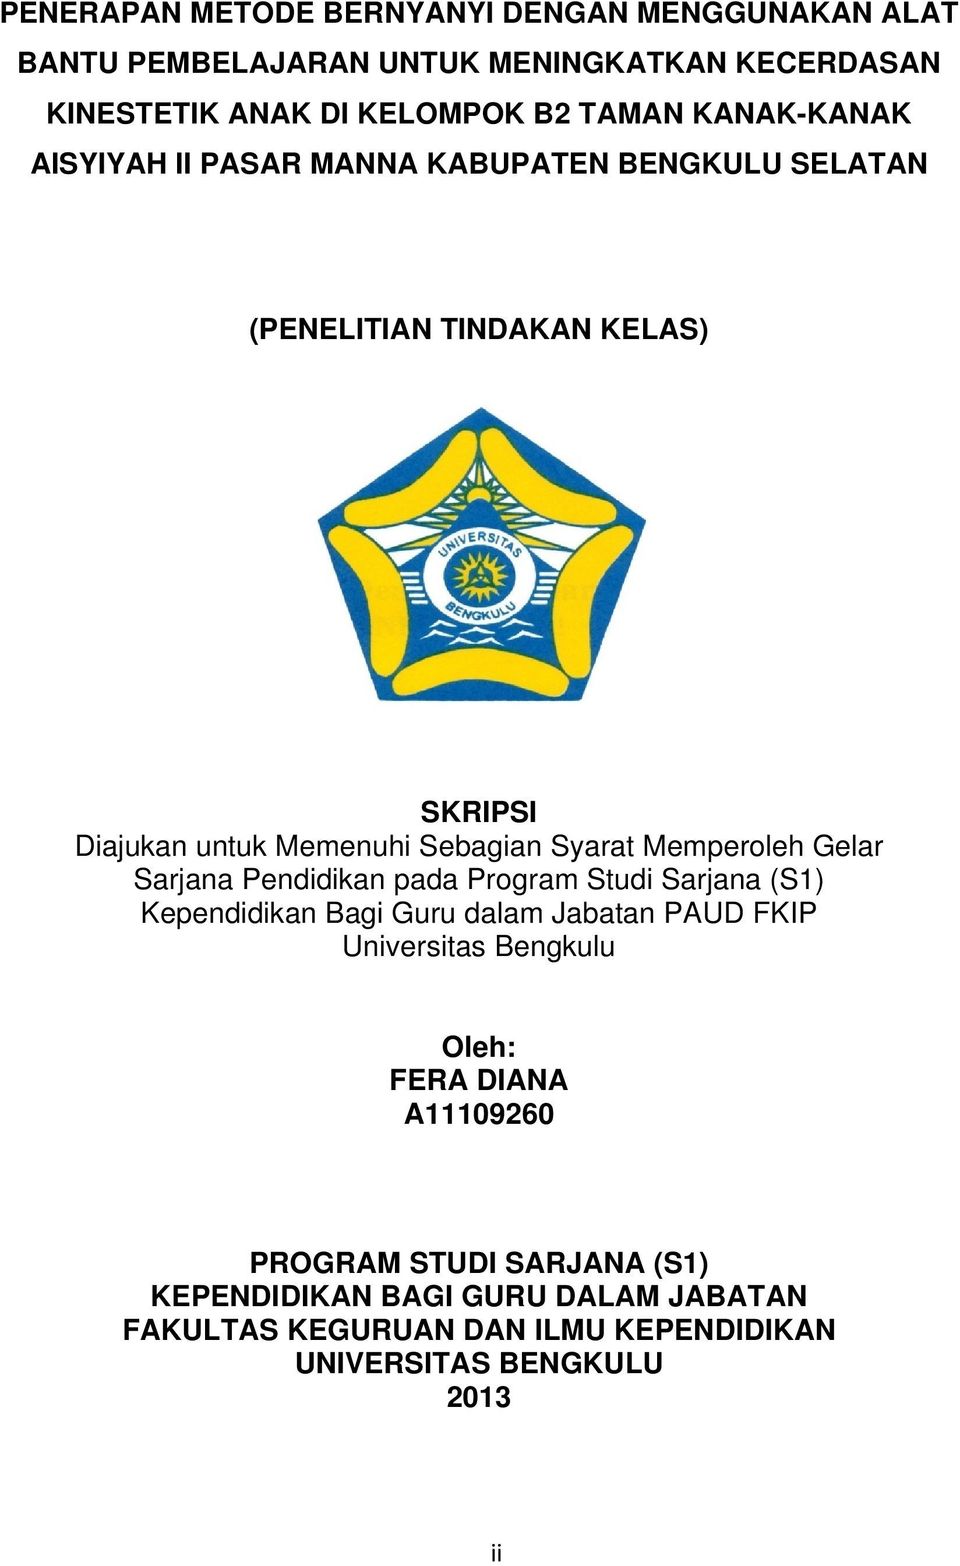 Memperoleh Gelar Sarjana Pendidikan pada Program Studi Sarjana (S1) Kependidikan Bagi Guru dalam Jabatan PAUD FKIP Universitas Bengkulu Oleh: